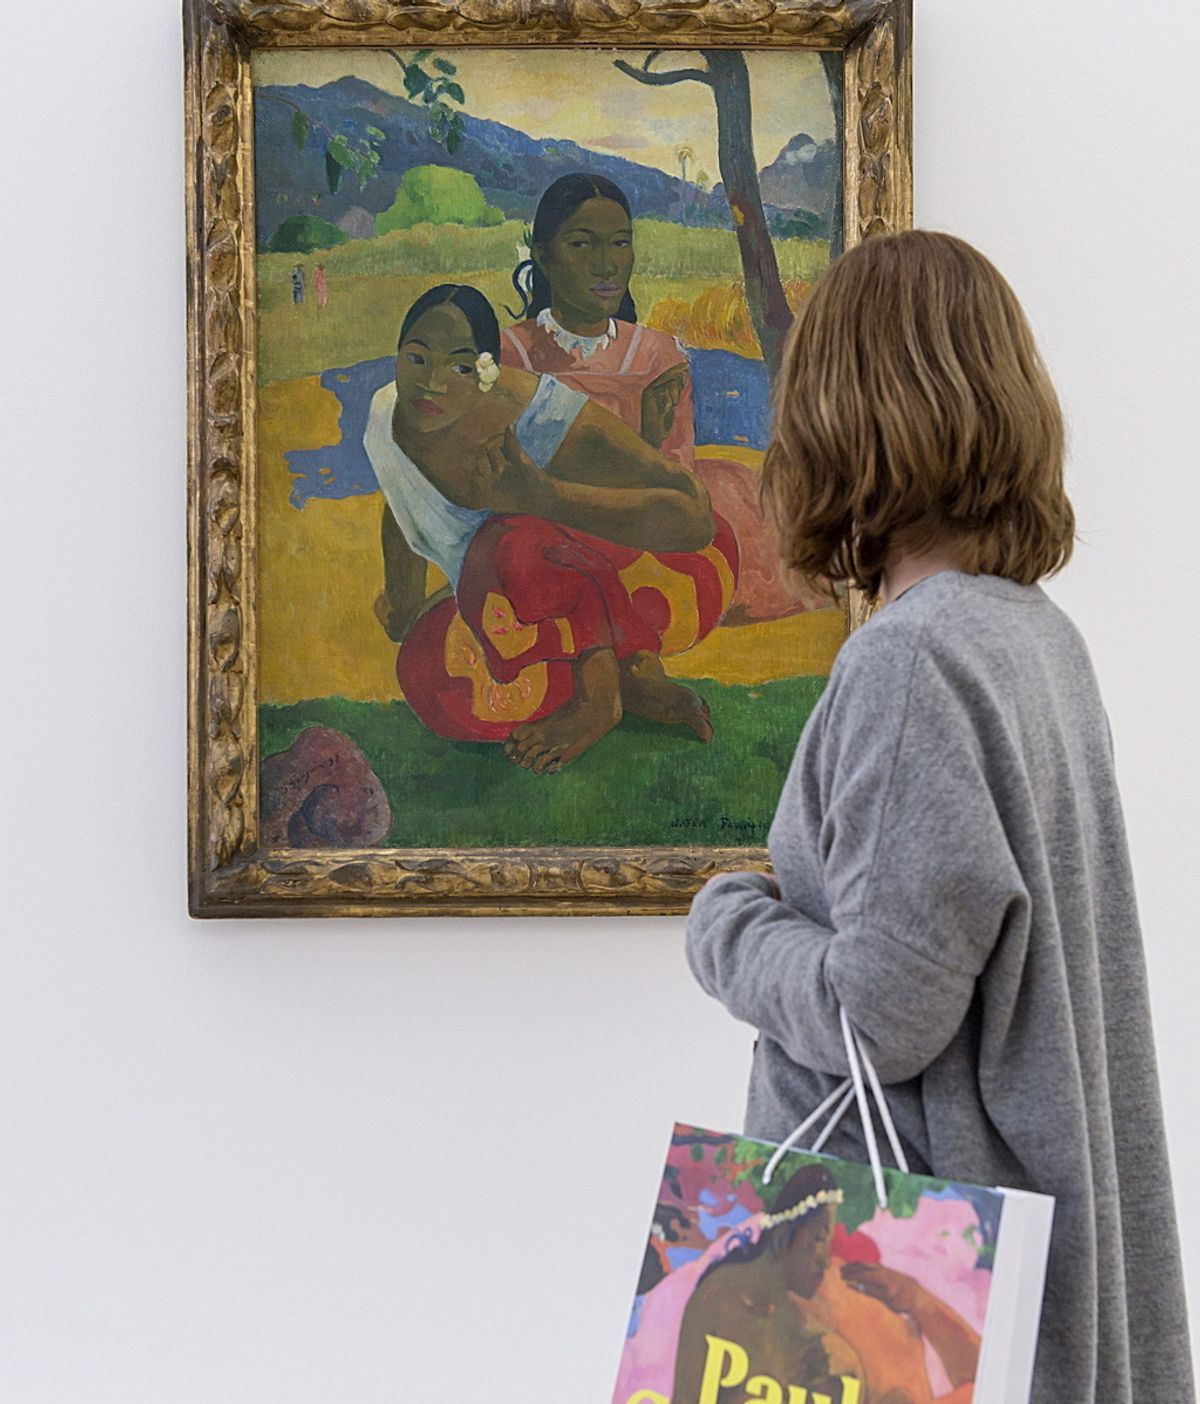 Un cuadro de Gauguin se convierte en la obra de arte más cara jamás subastada